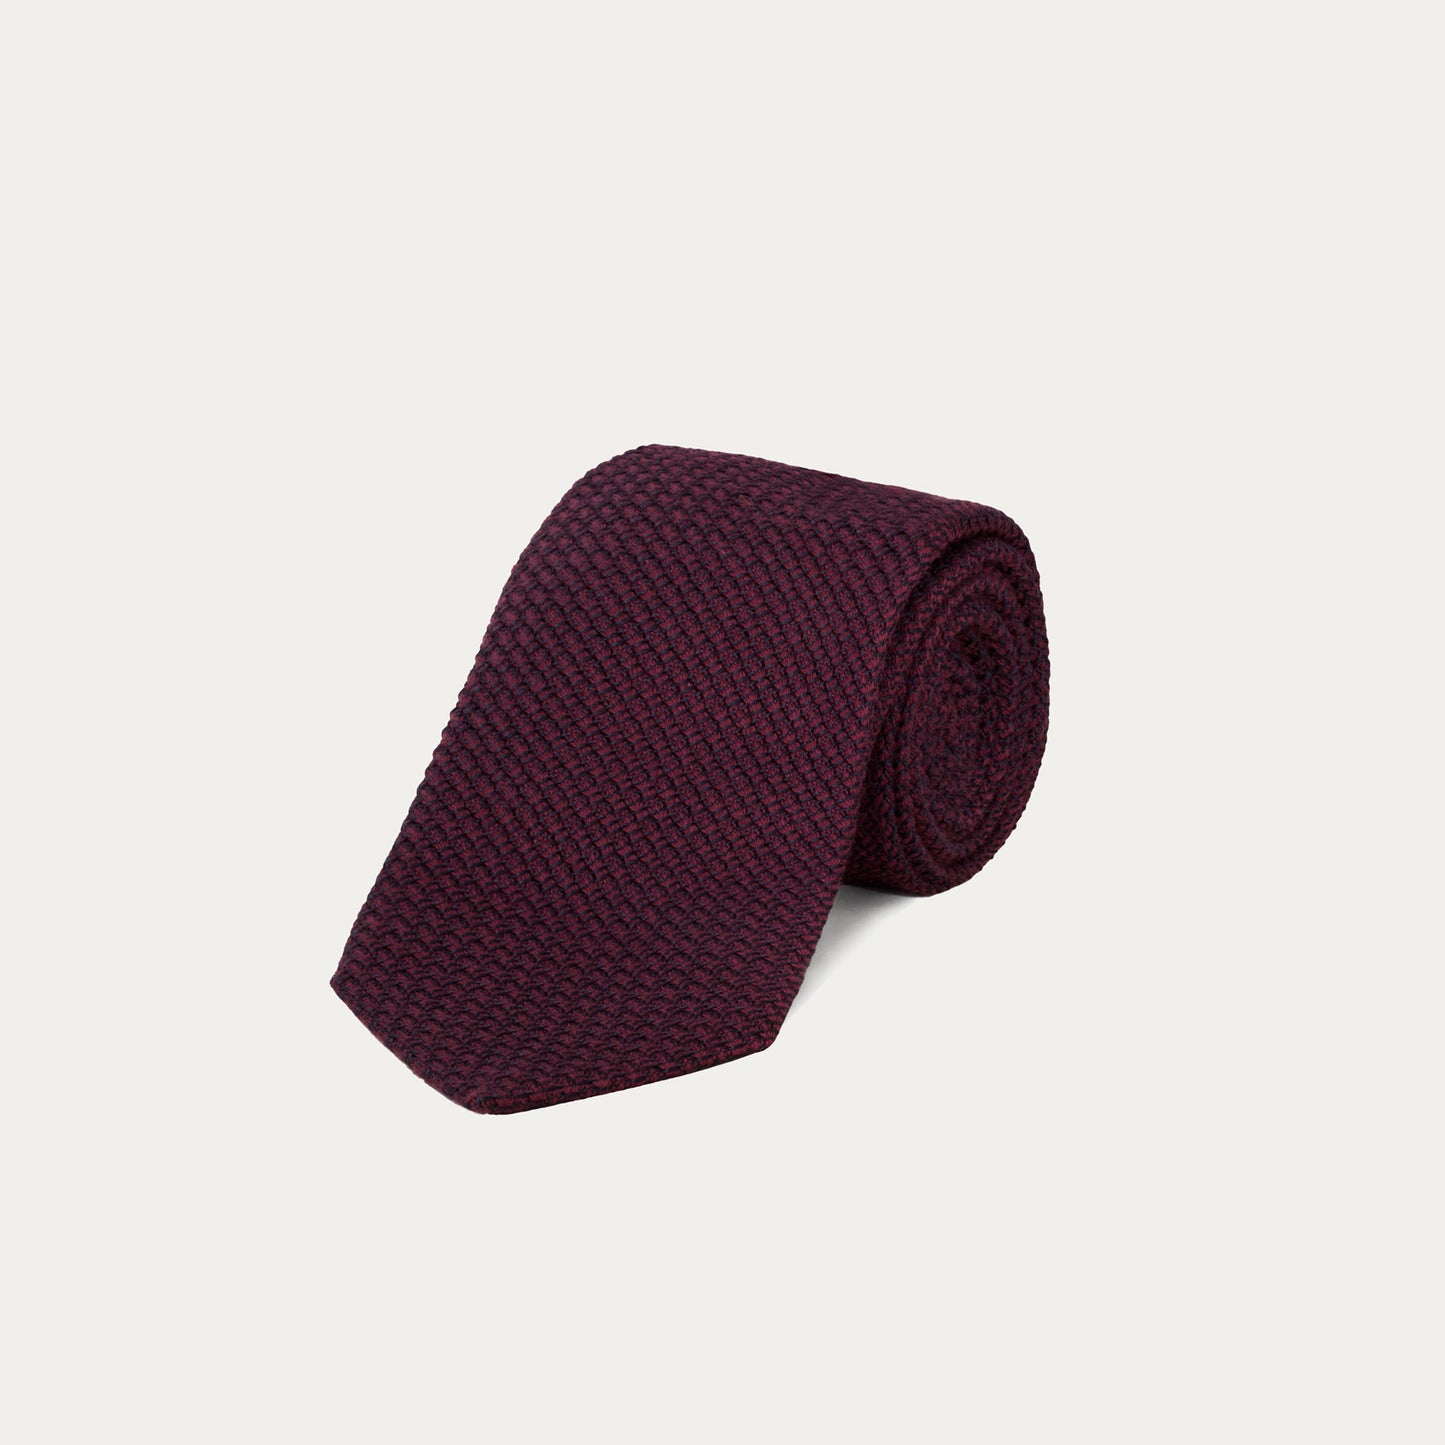 Burgundy tie in grenadine silk and cotton